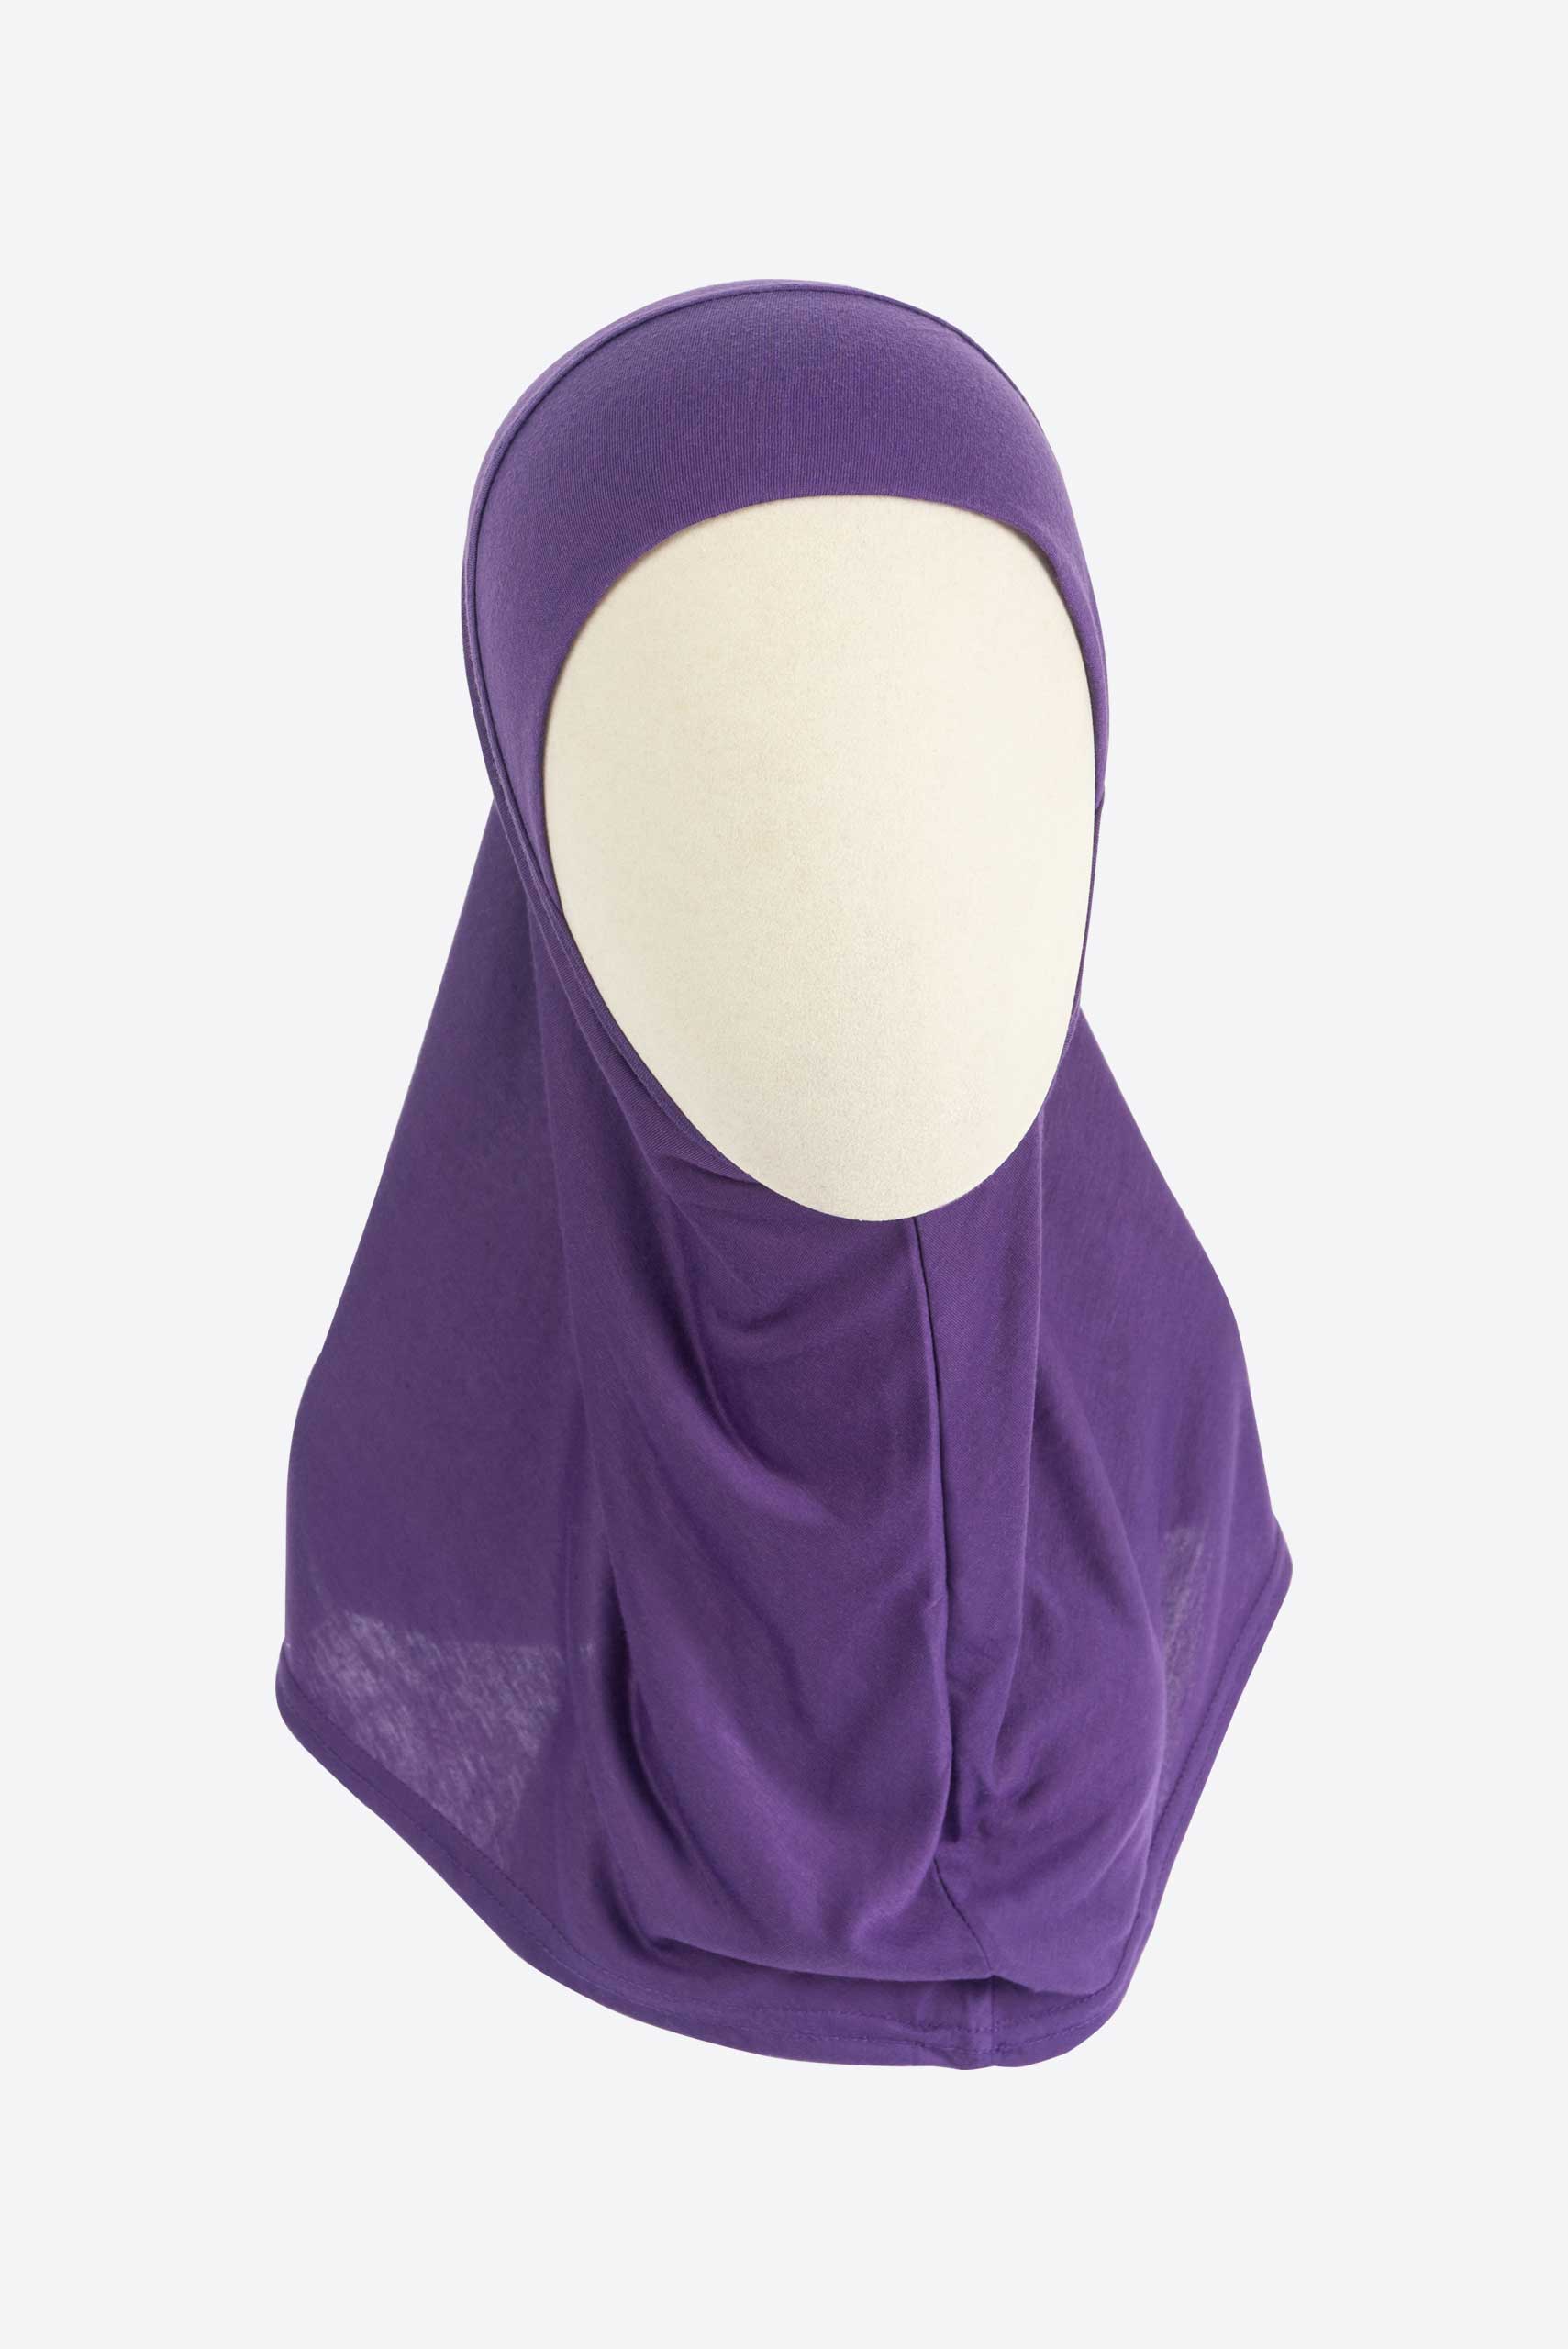 Simple Hijab Scarf - Hijab Scarf - Muslim Lifestyle Store